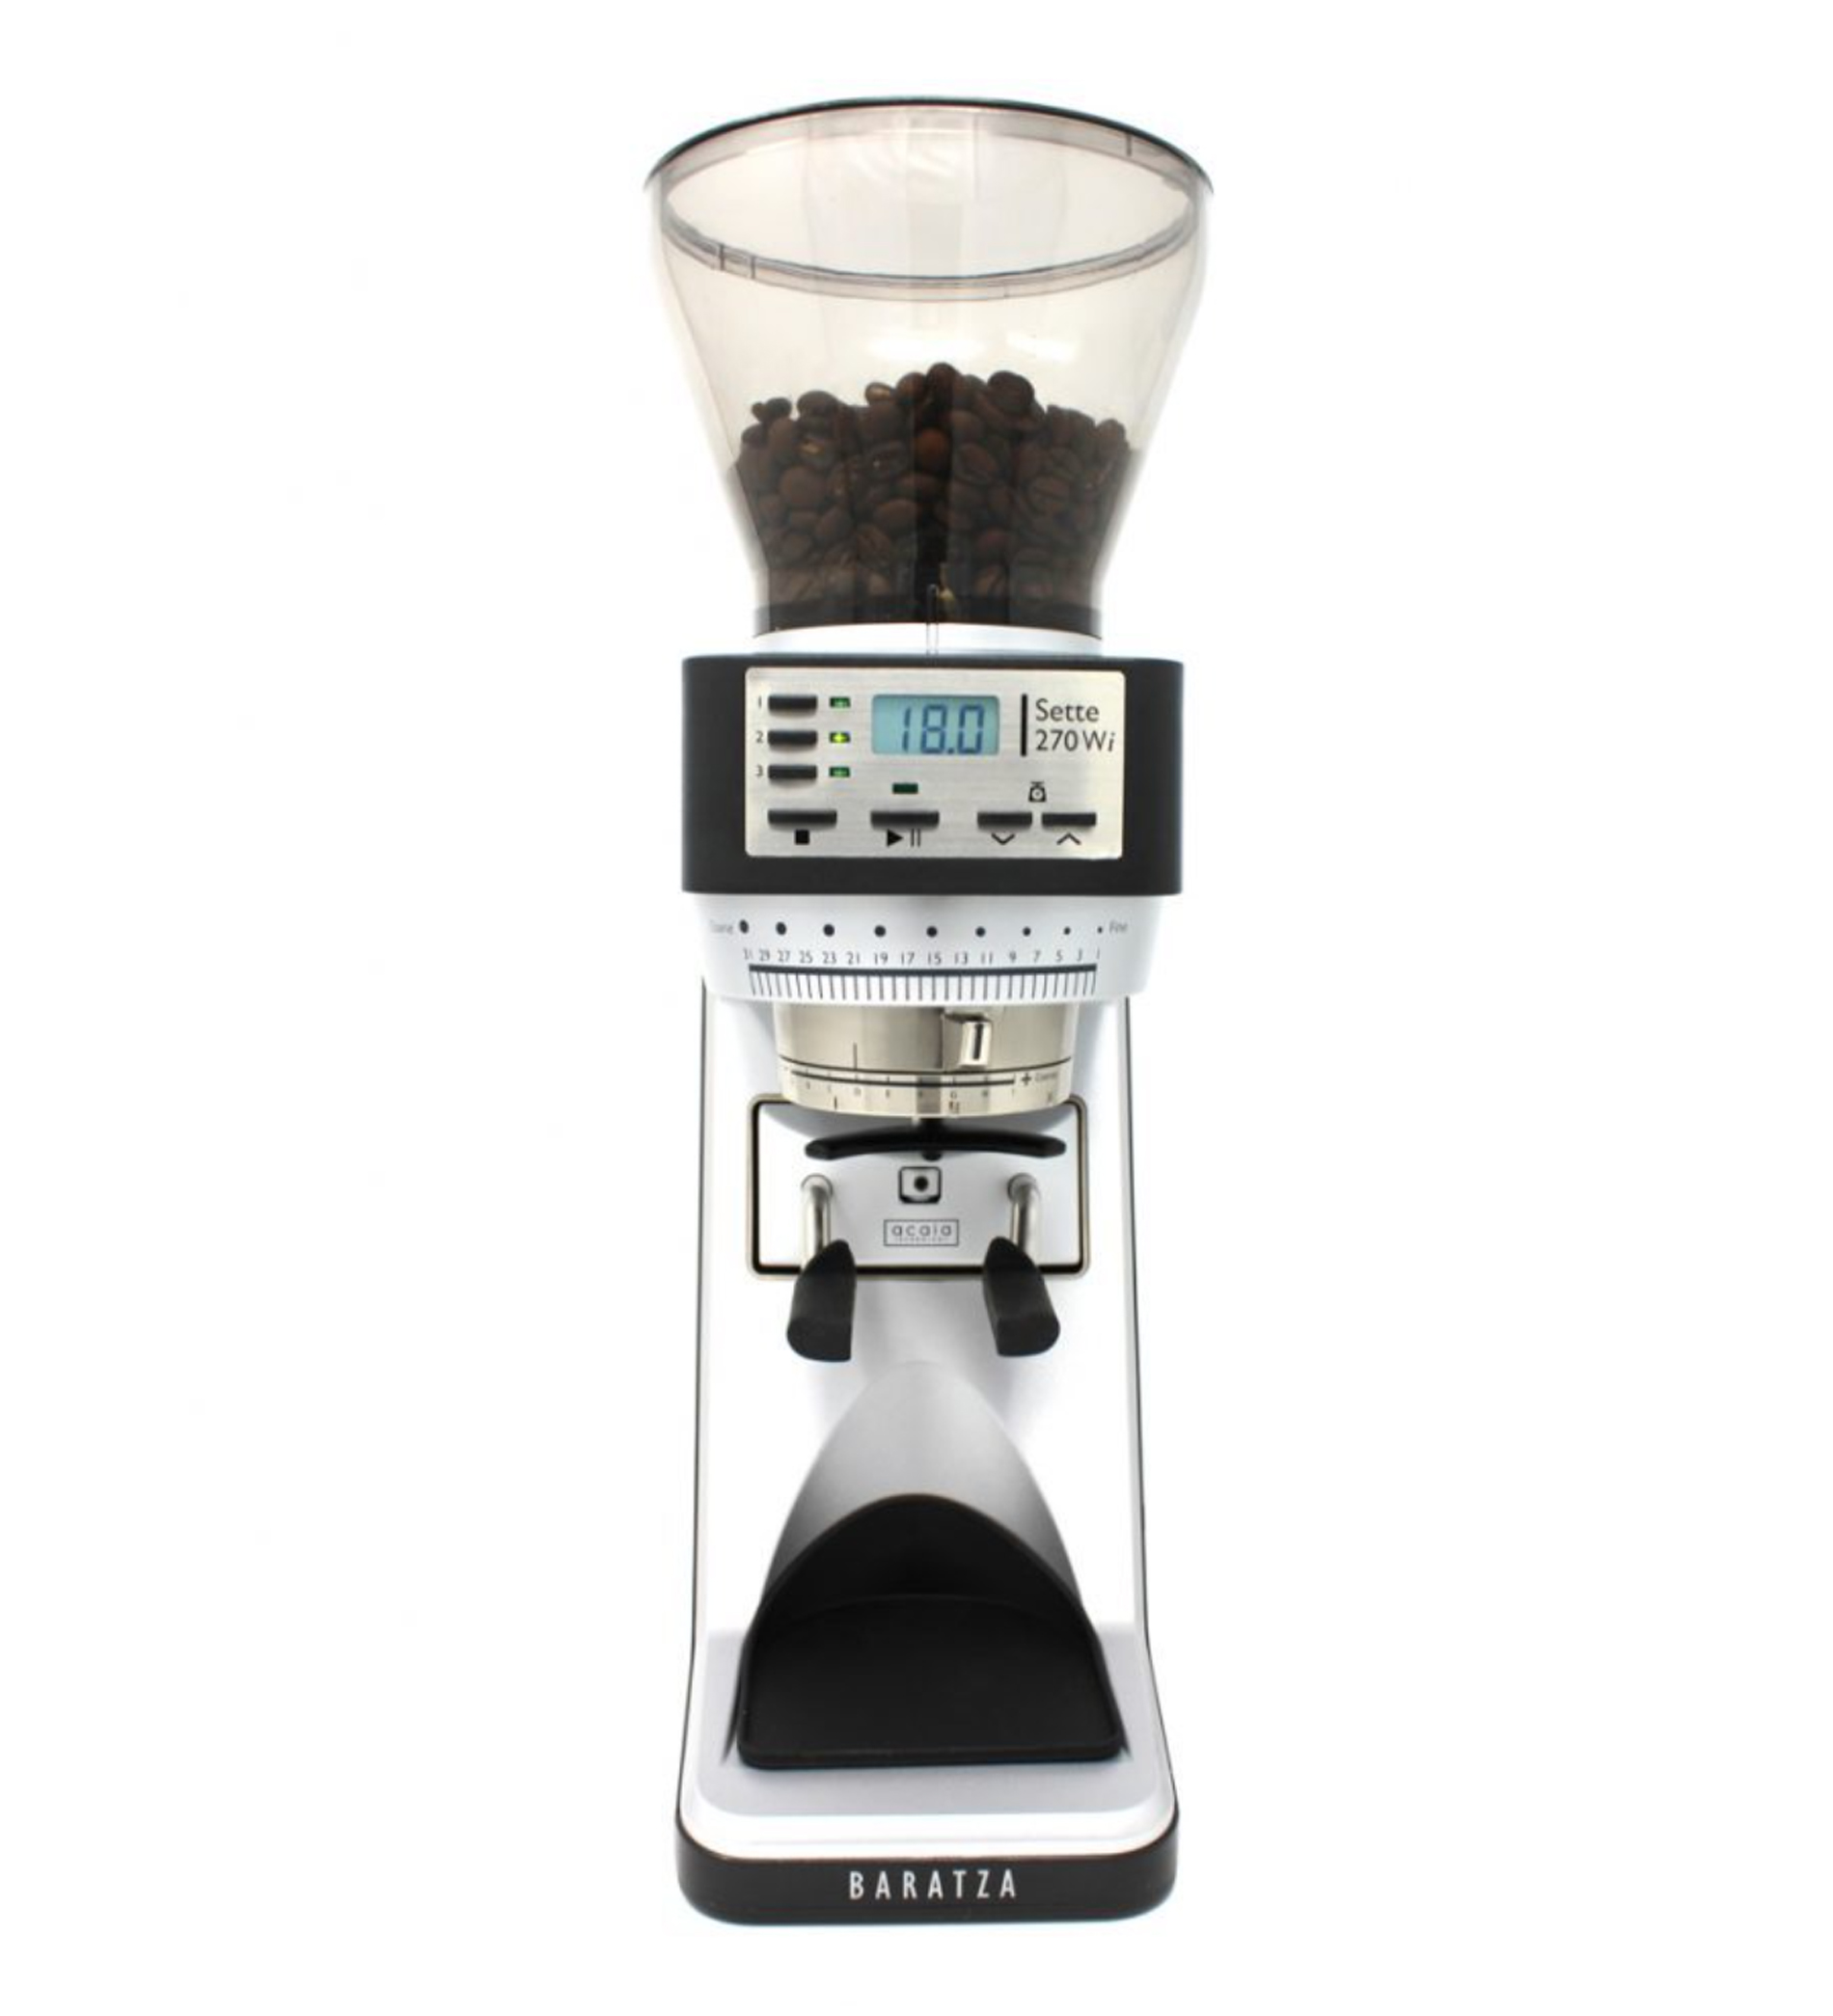 11270W Sette 270W 120v Coffee Grinder